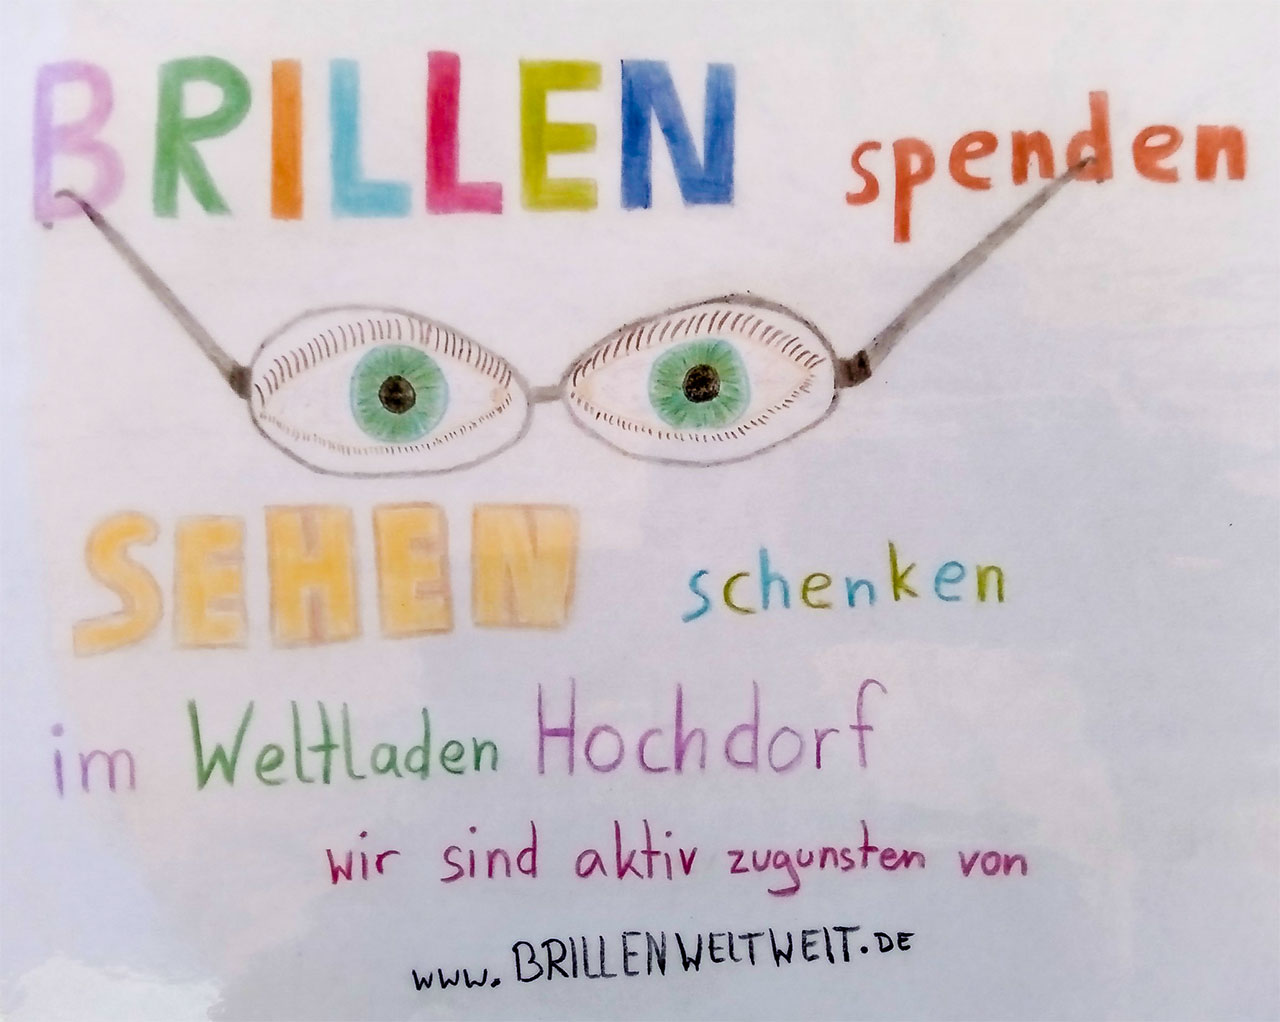 Brillen spenden – Sehen schenken im Weltladen Hochdorf. Wir sind aktiv zugunsten von www.BrillenWeltweit.de